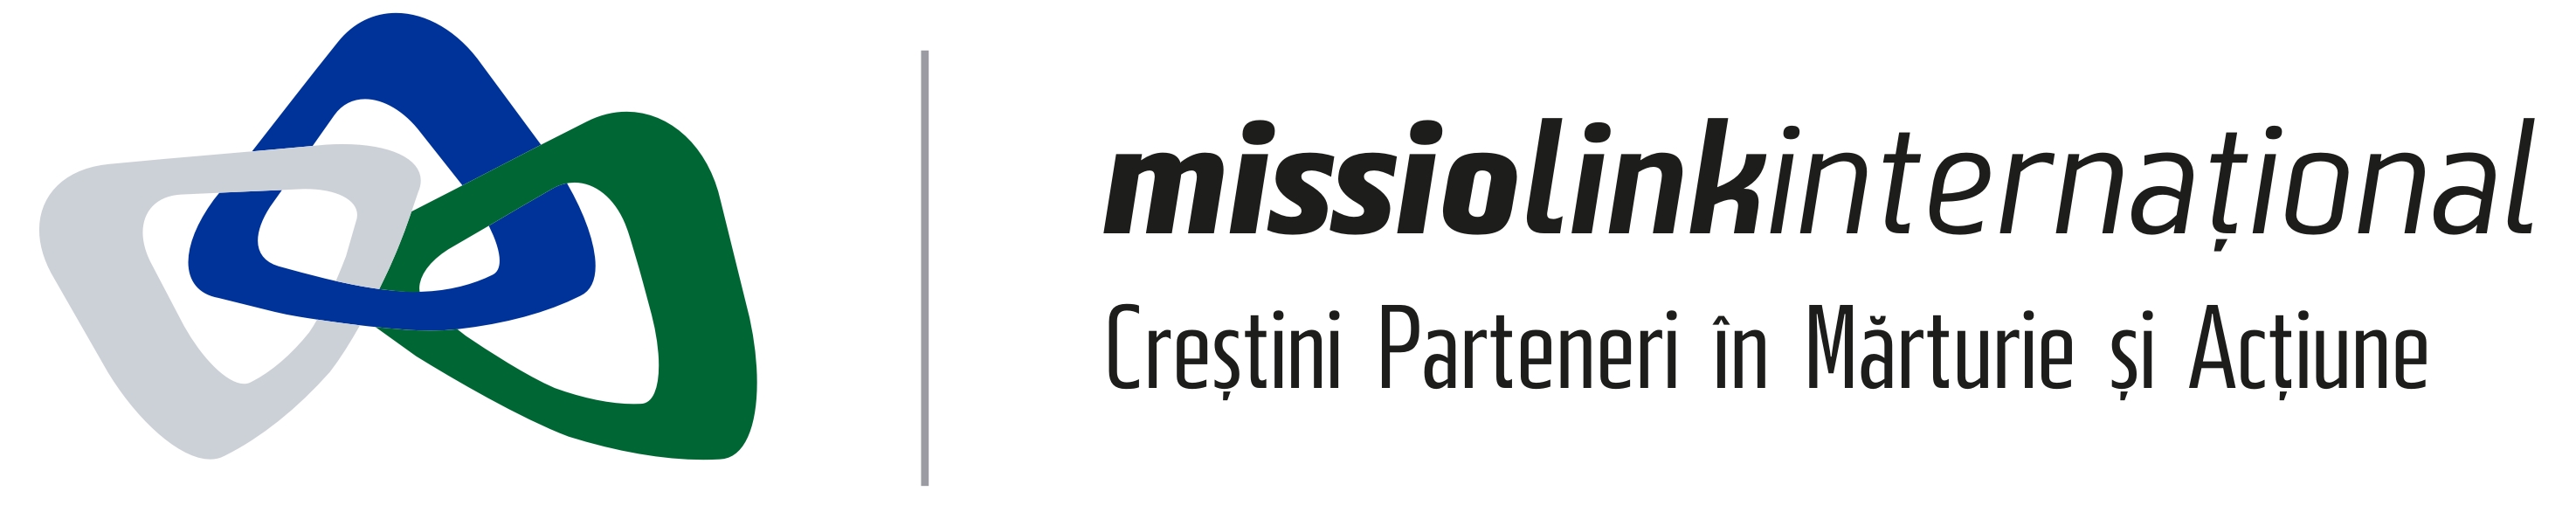 Fundatia Missio Link International logo